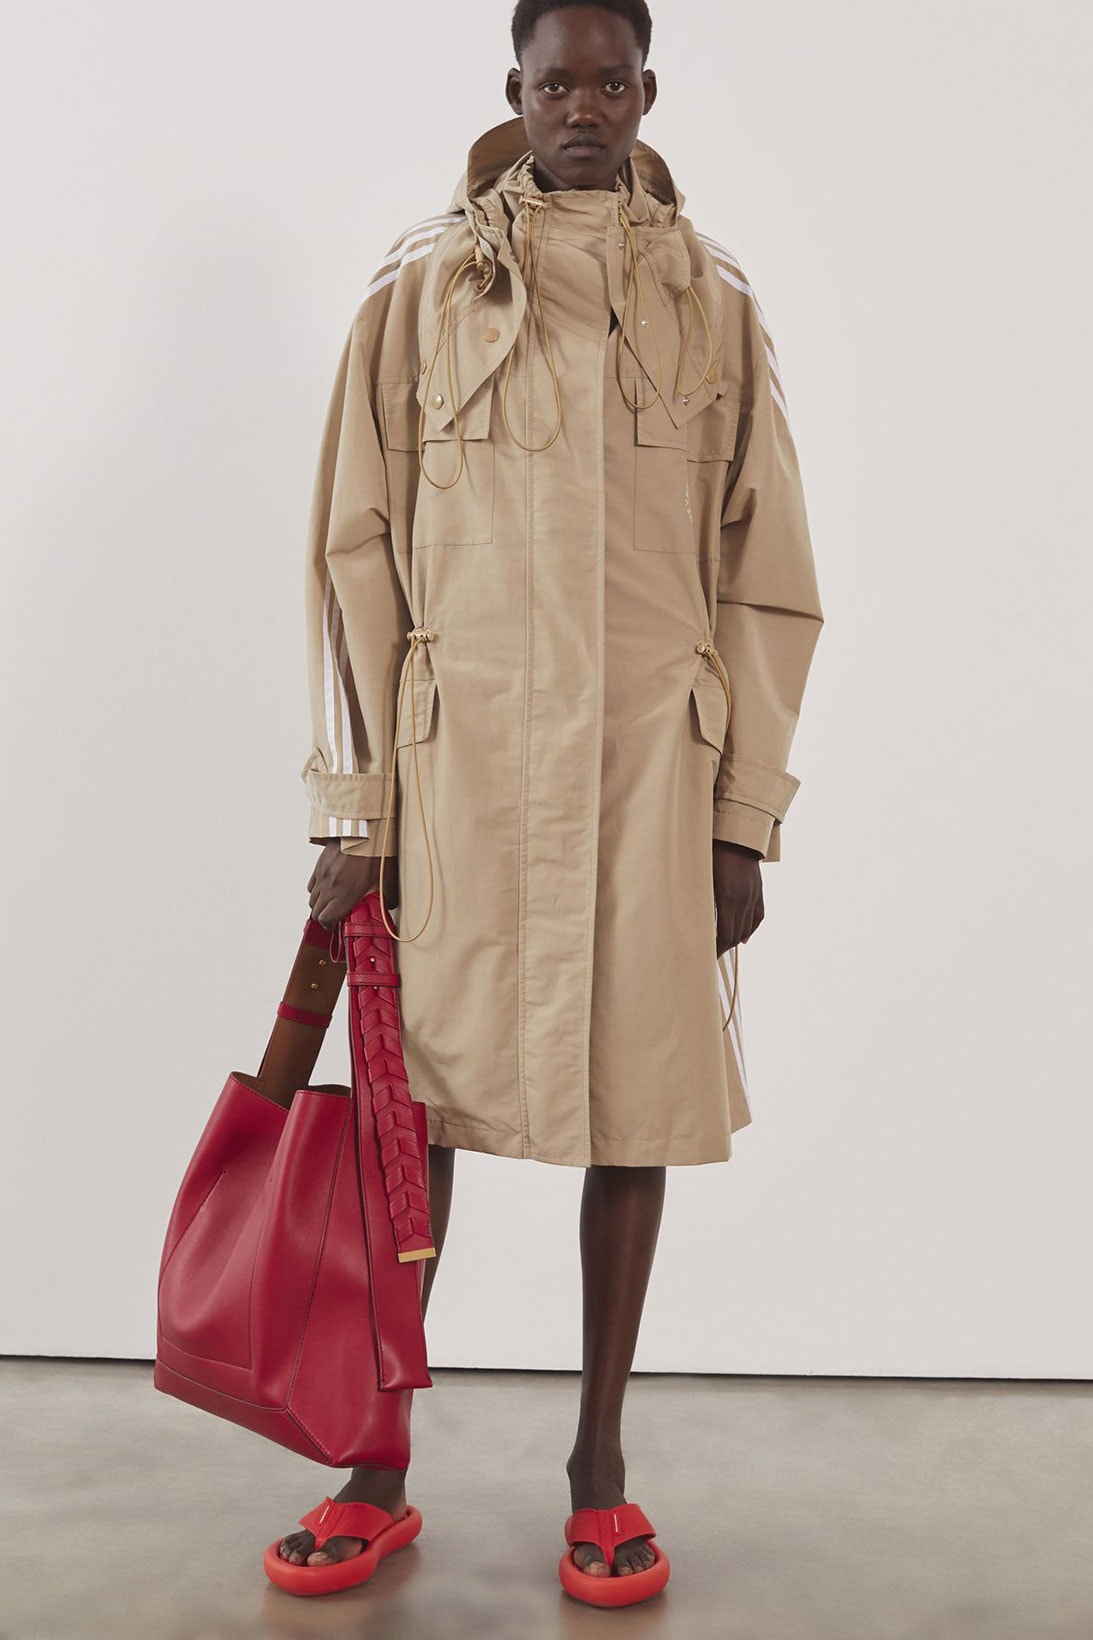 stella mccartney adidas summer collaboration unisex jacket coat sustainable bag